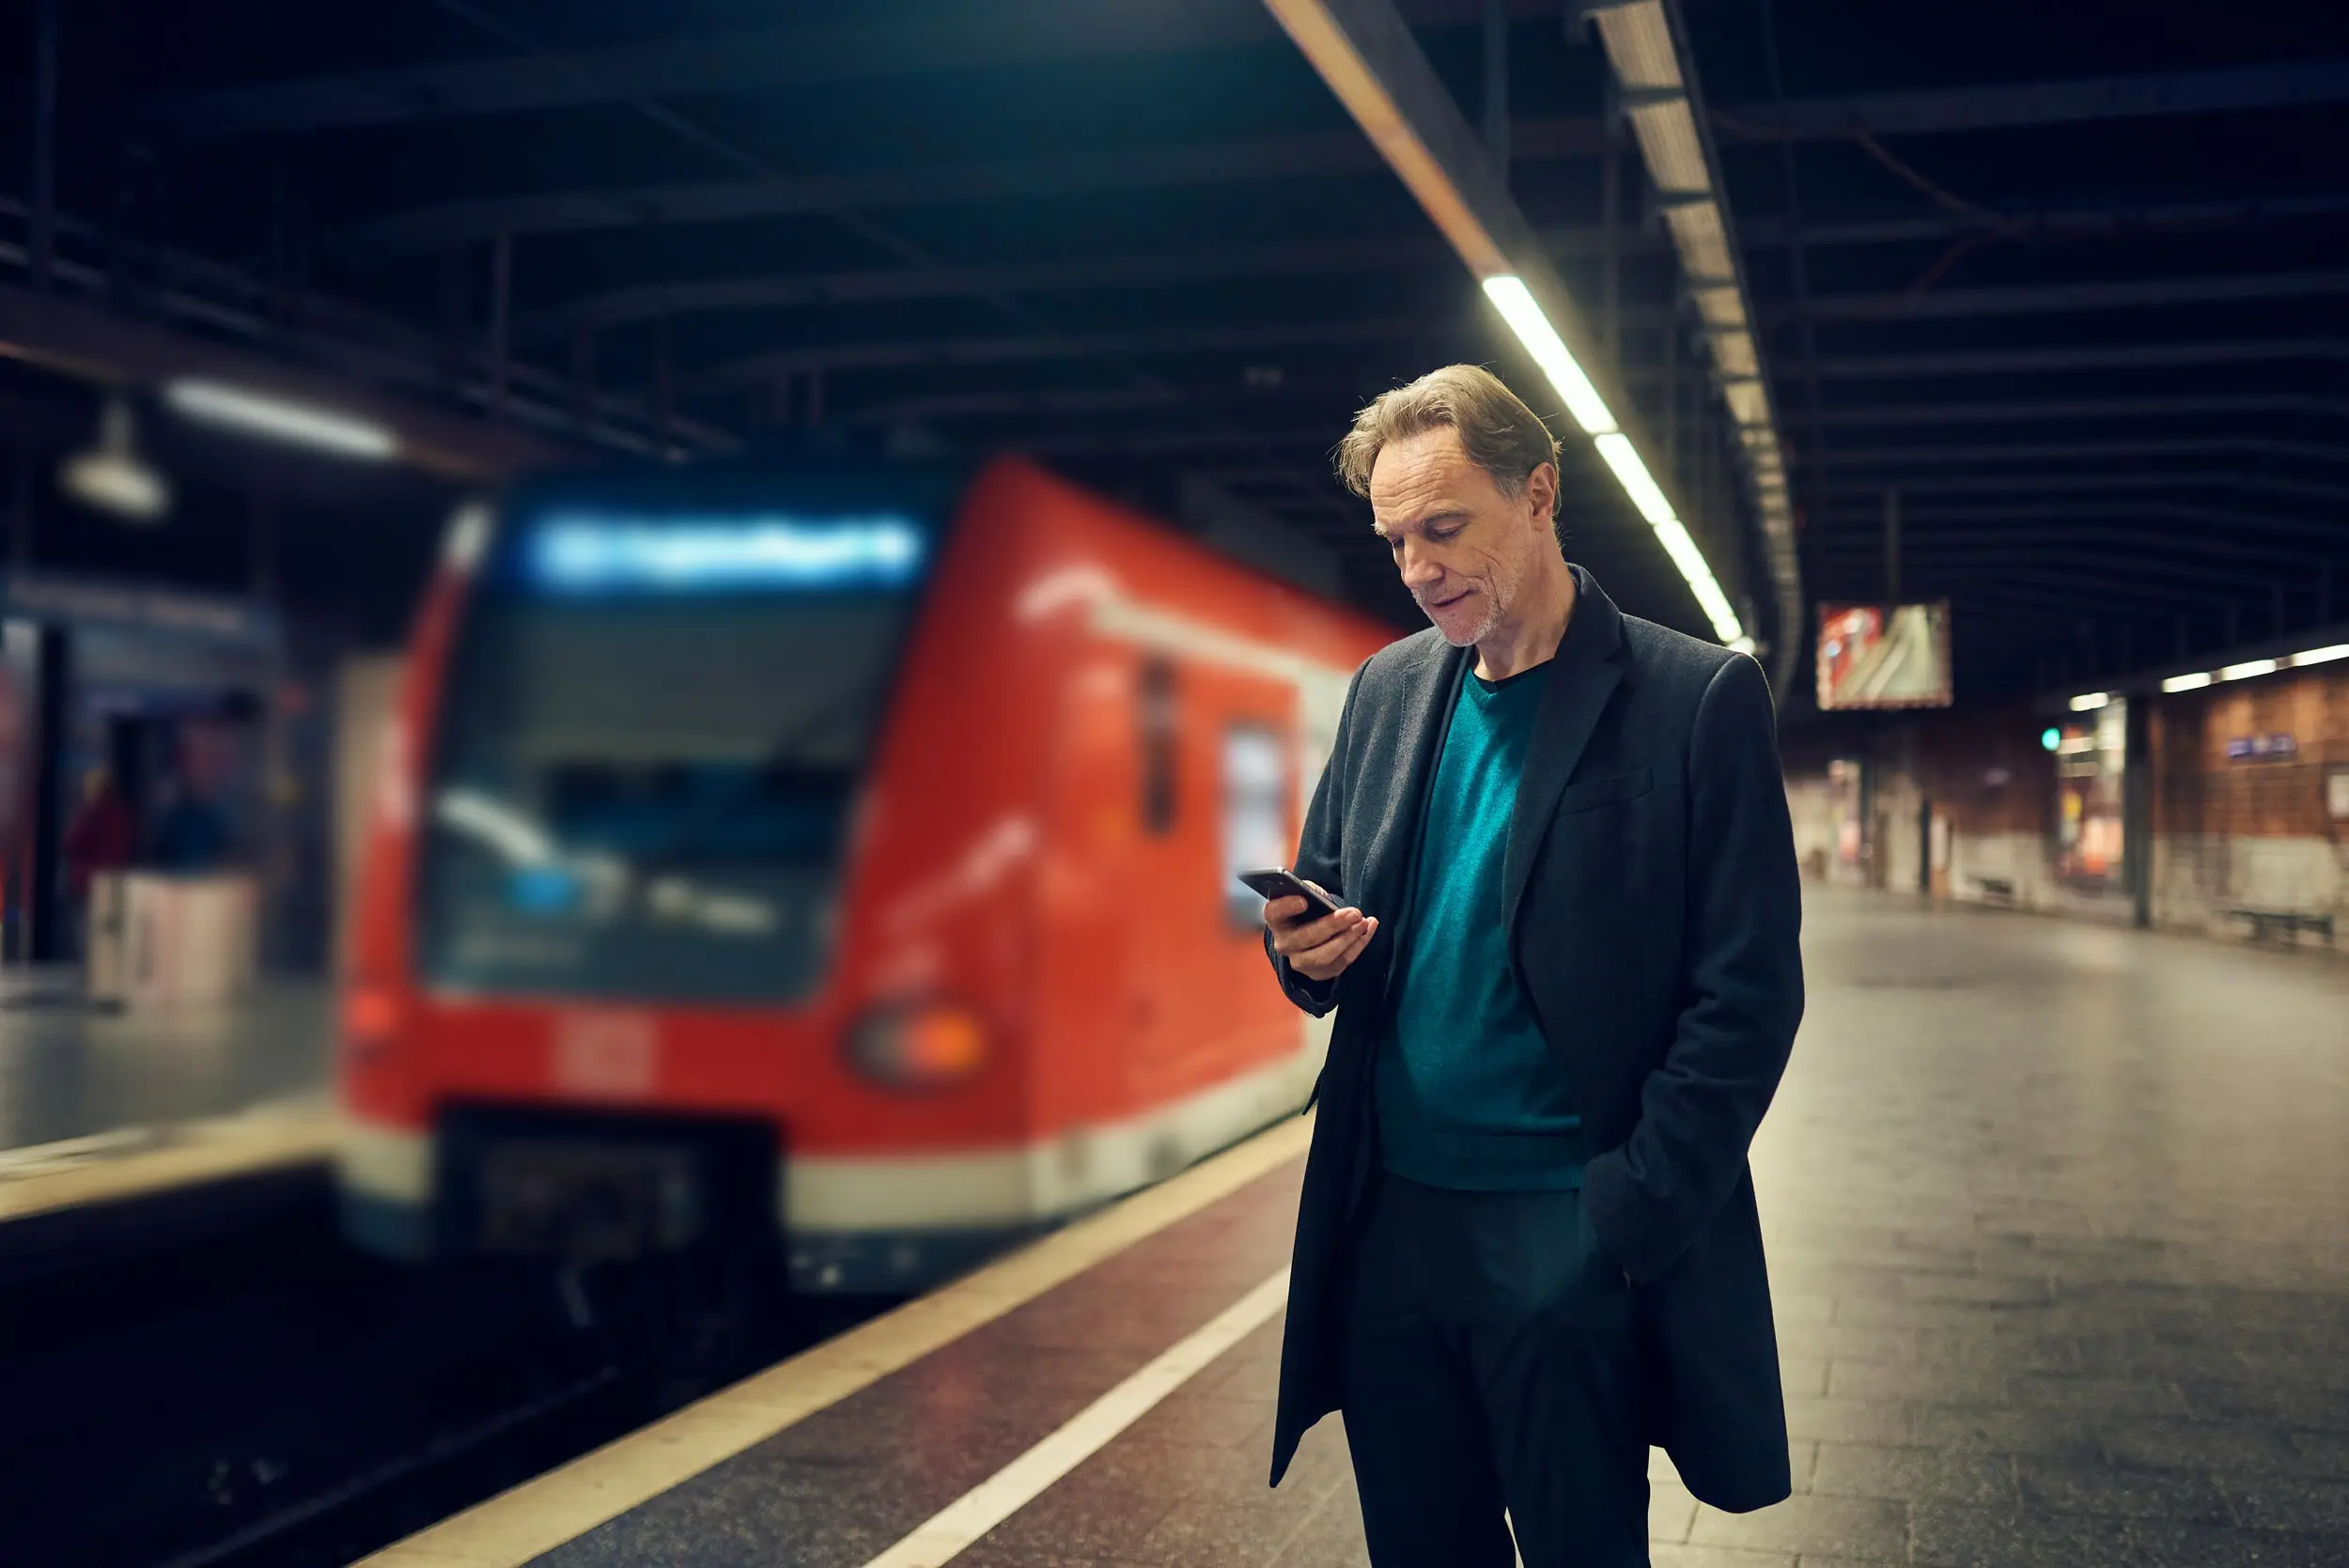 Mann bucht Termin in der Smartpraxis mit Smartphone